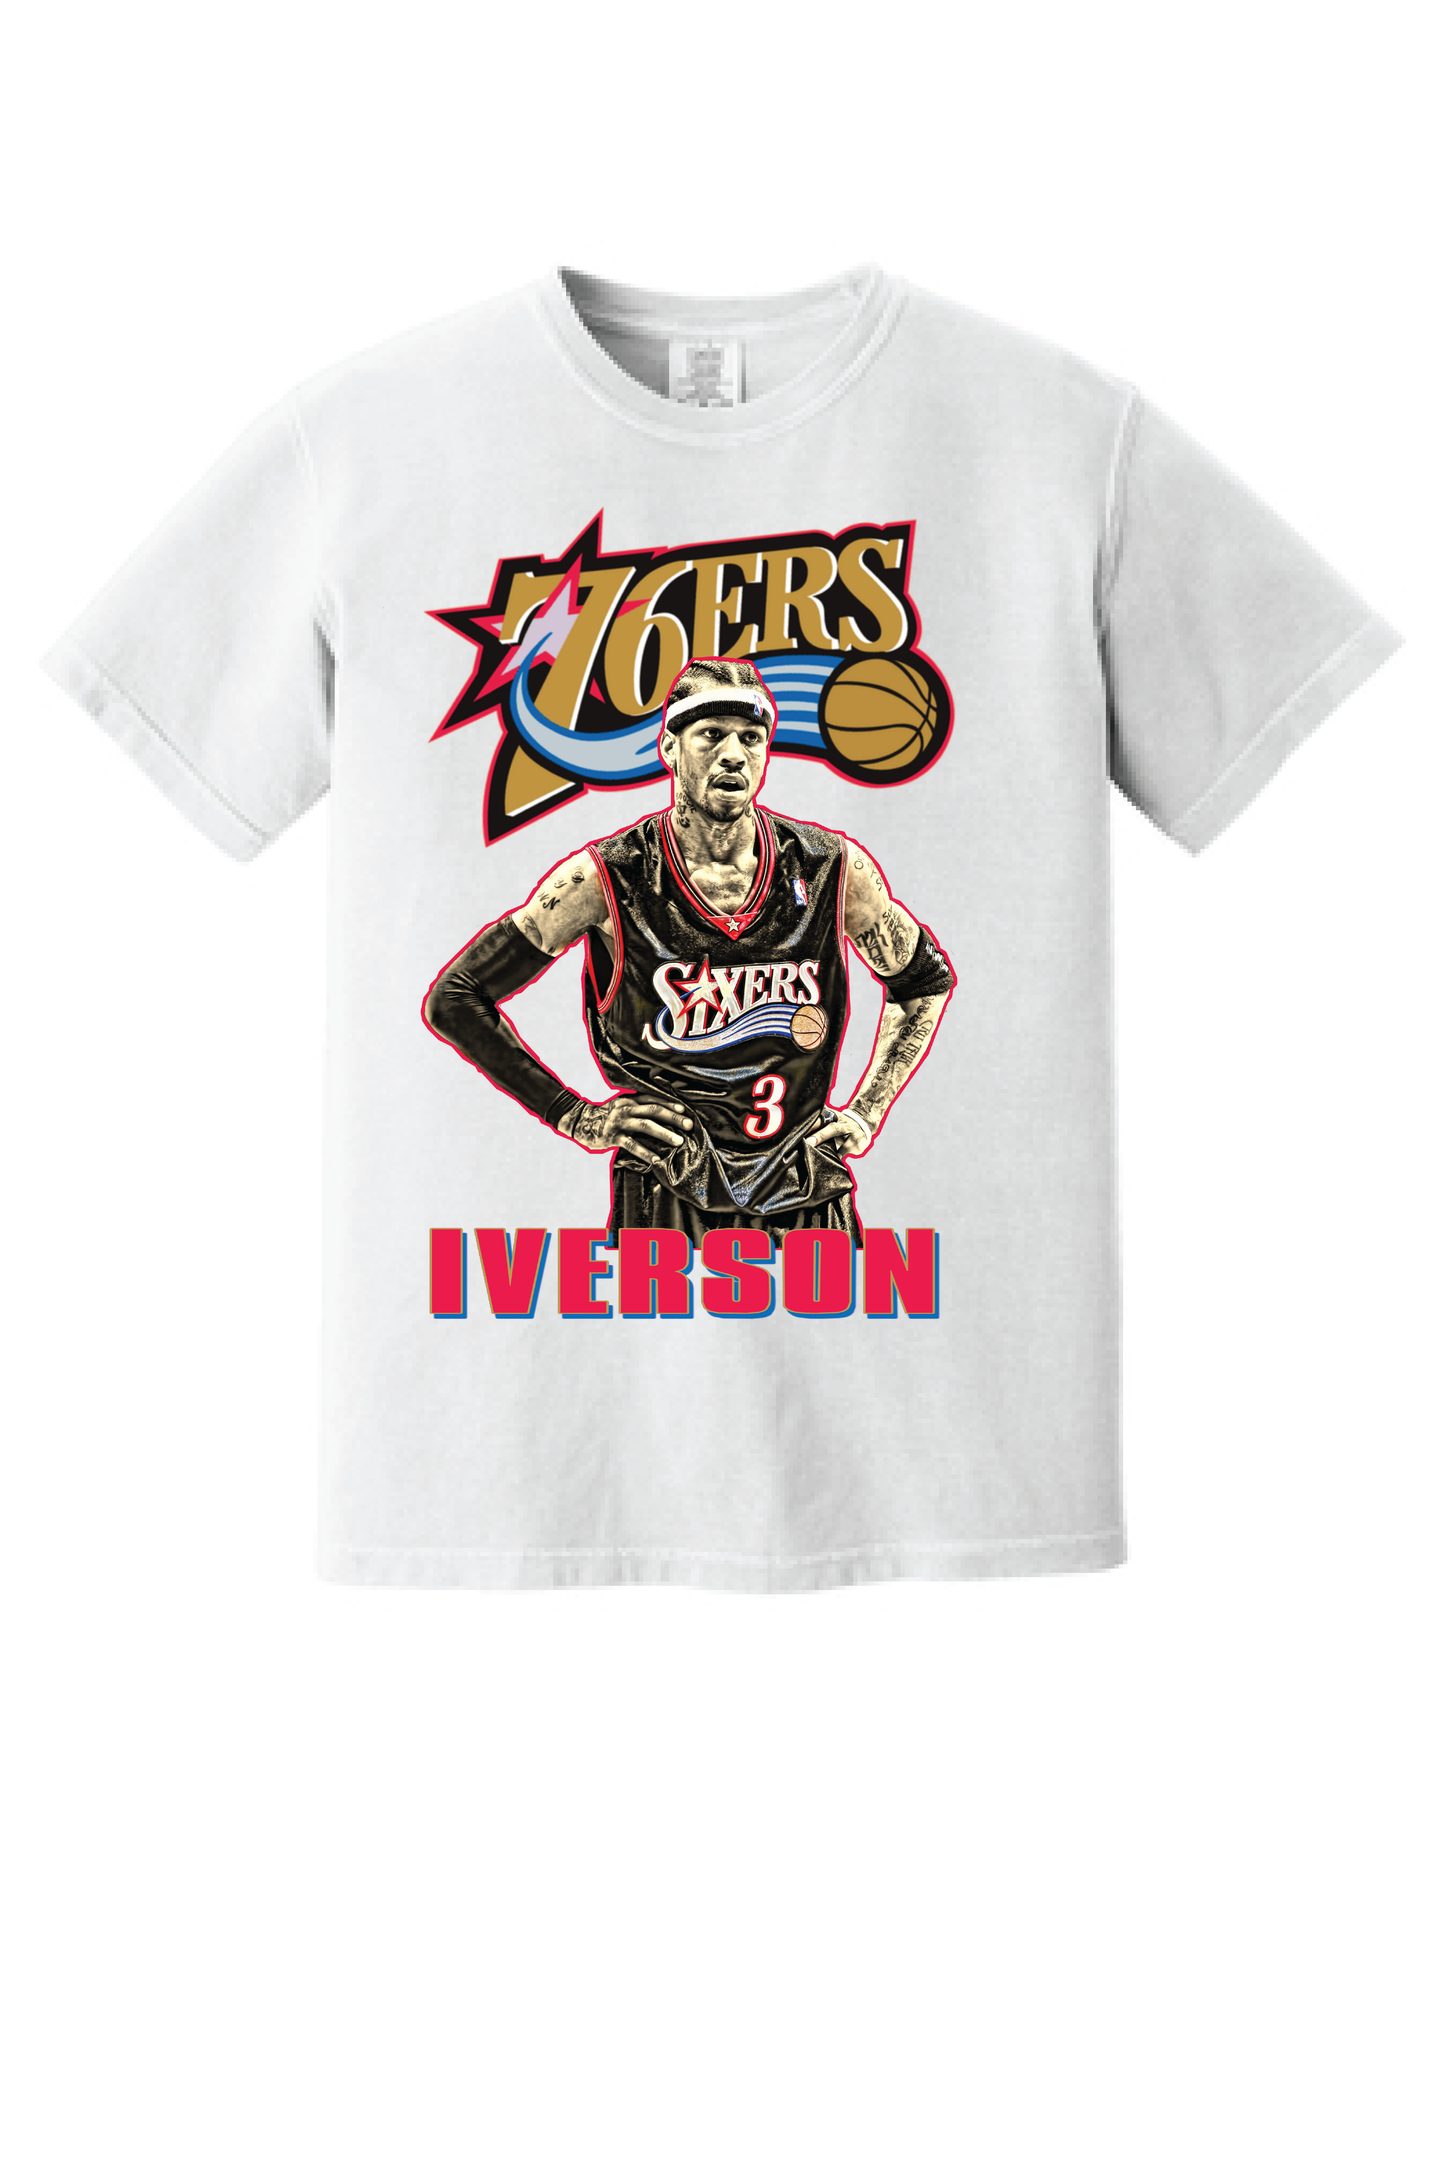 Allen Iverson Vintage Style 90's T-shirt Unisex Sizes